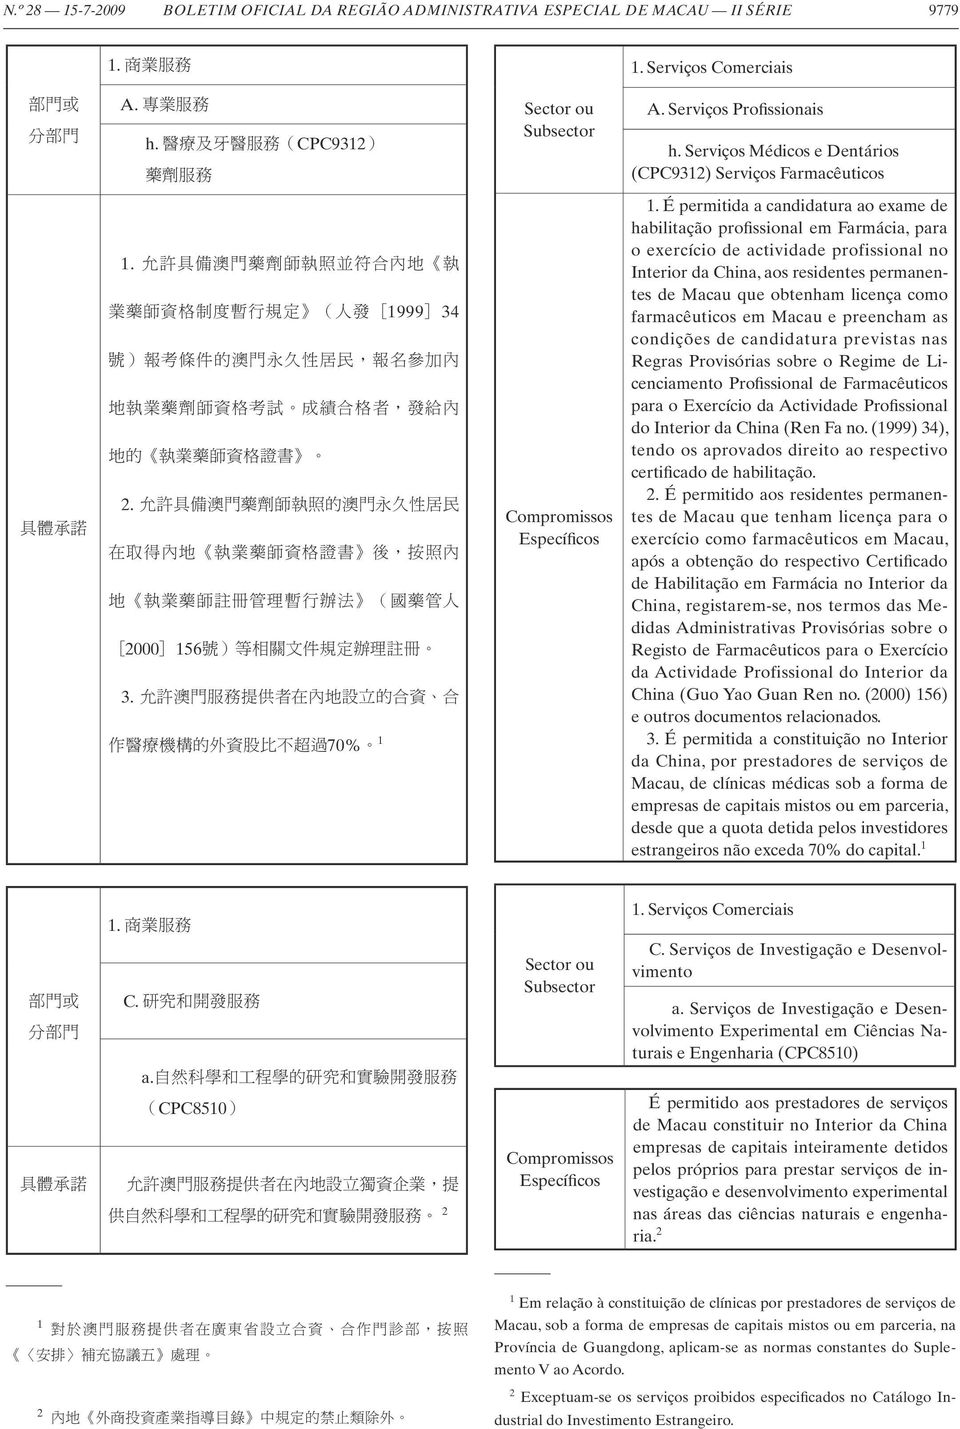 É permitida a candidatura ao exame de habilitação profissional em Farmácia, para o exercício de actividade profissional no Interior da China, aos residentes permanentes de Macau que obtenham licença